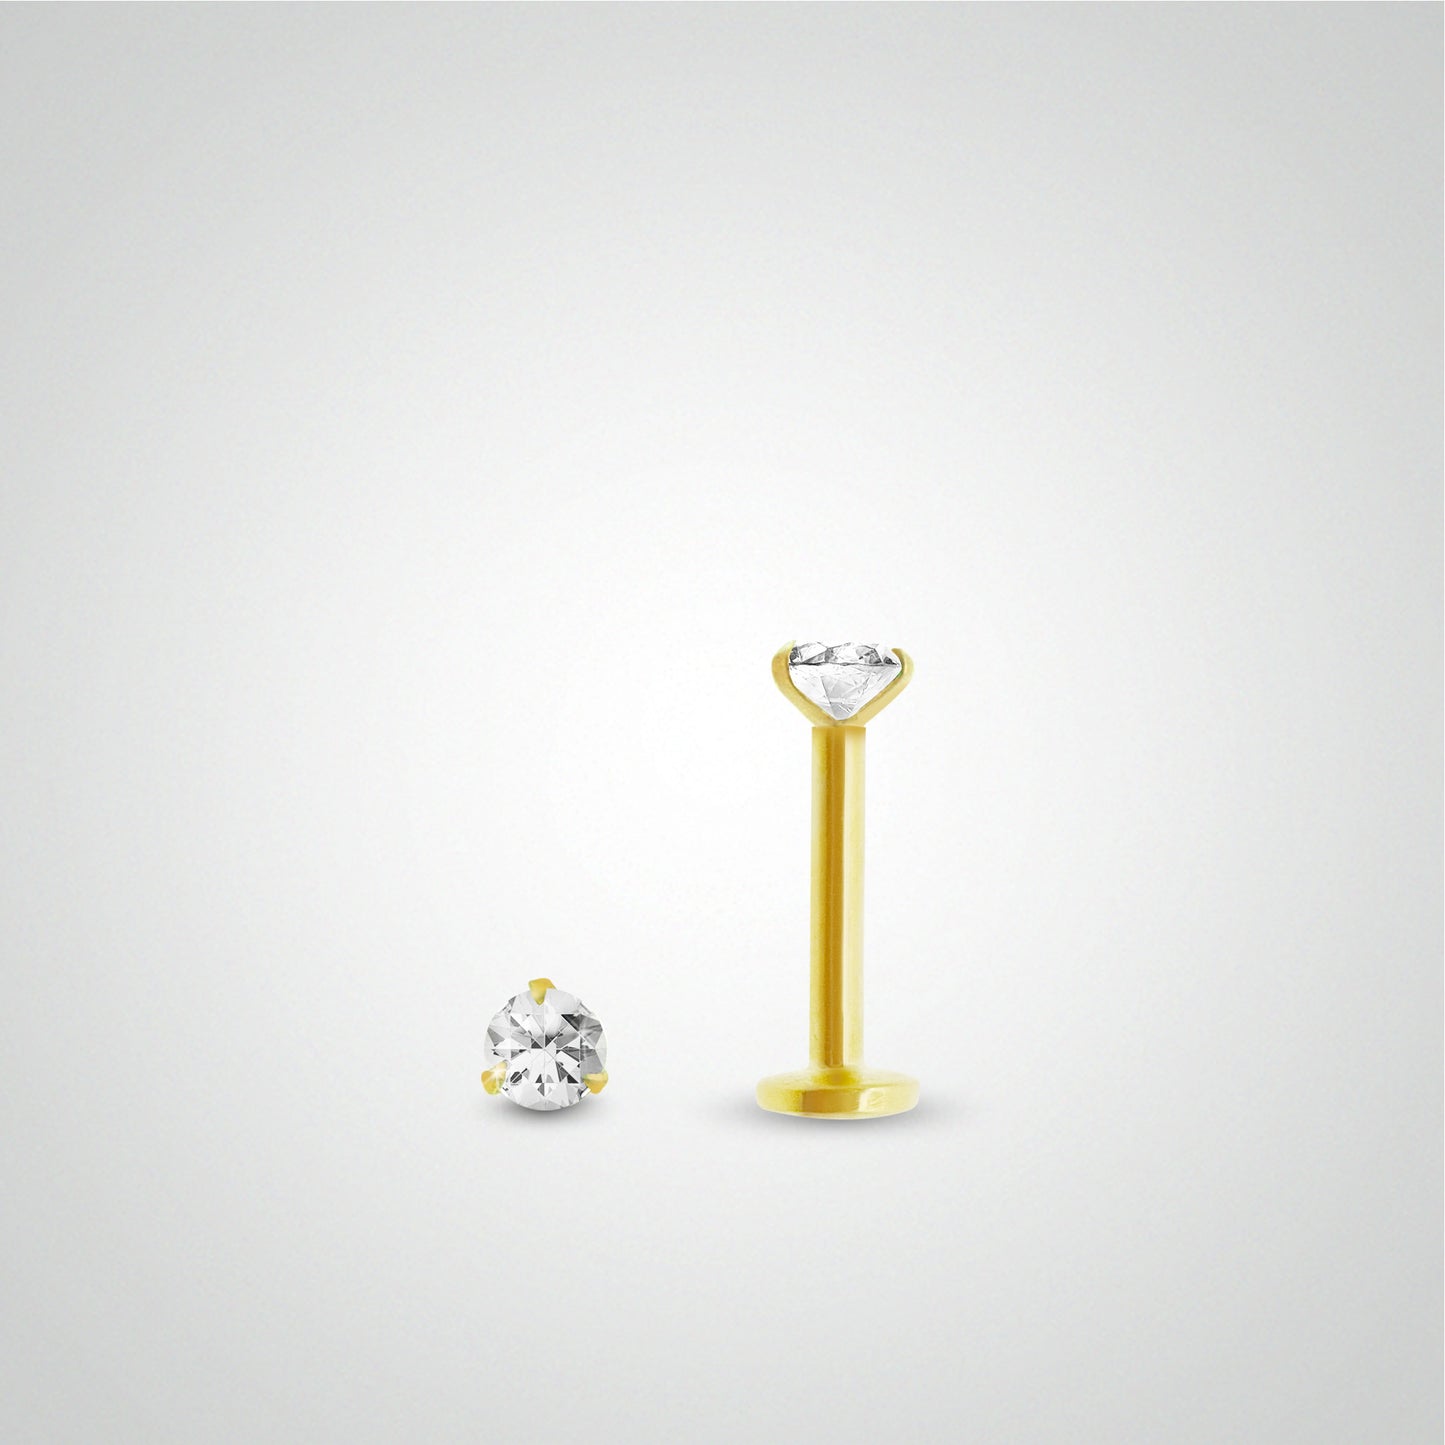 Piercing hélix or jaune avec diamant 0,05 carats (vissable)